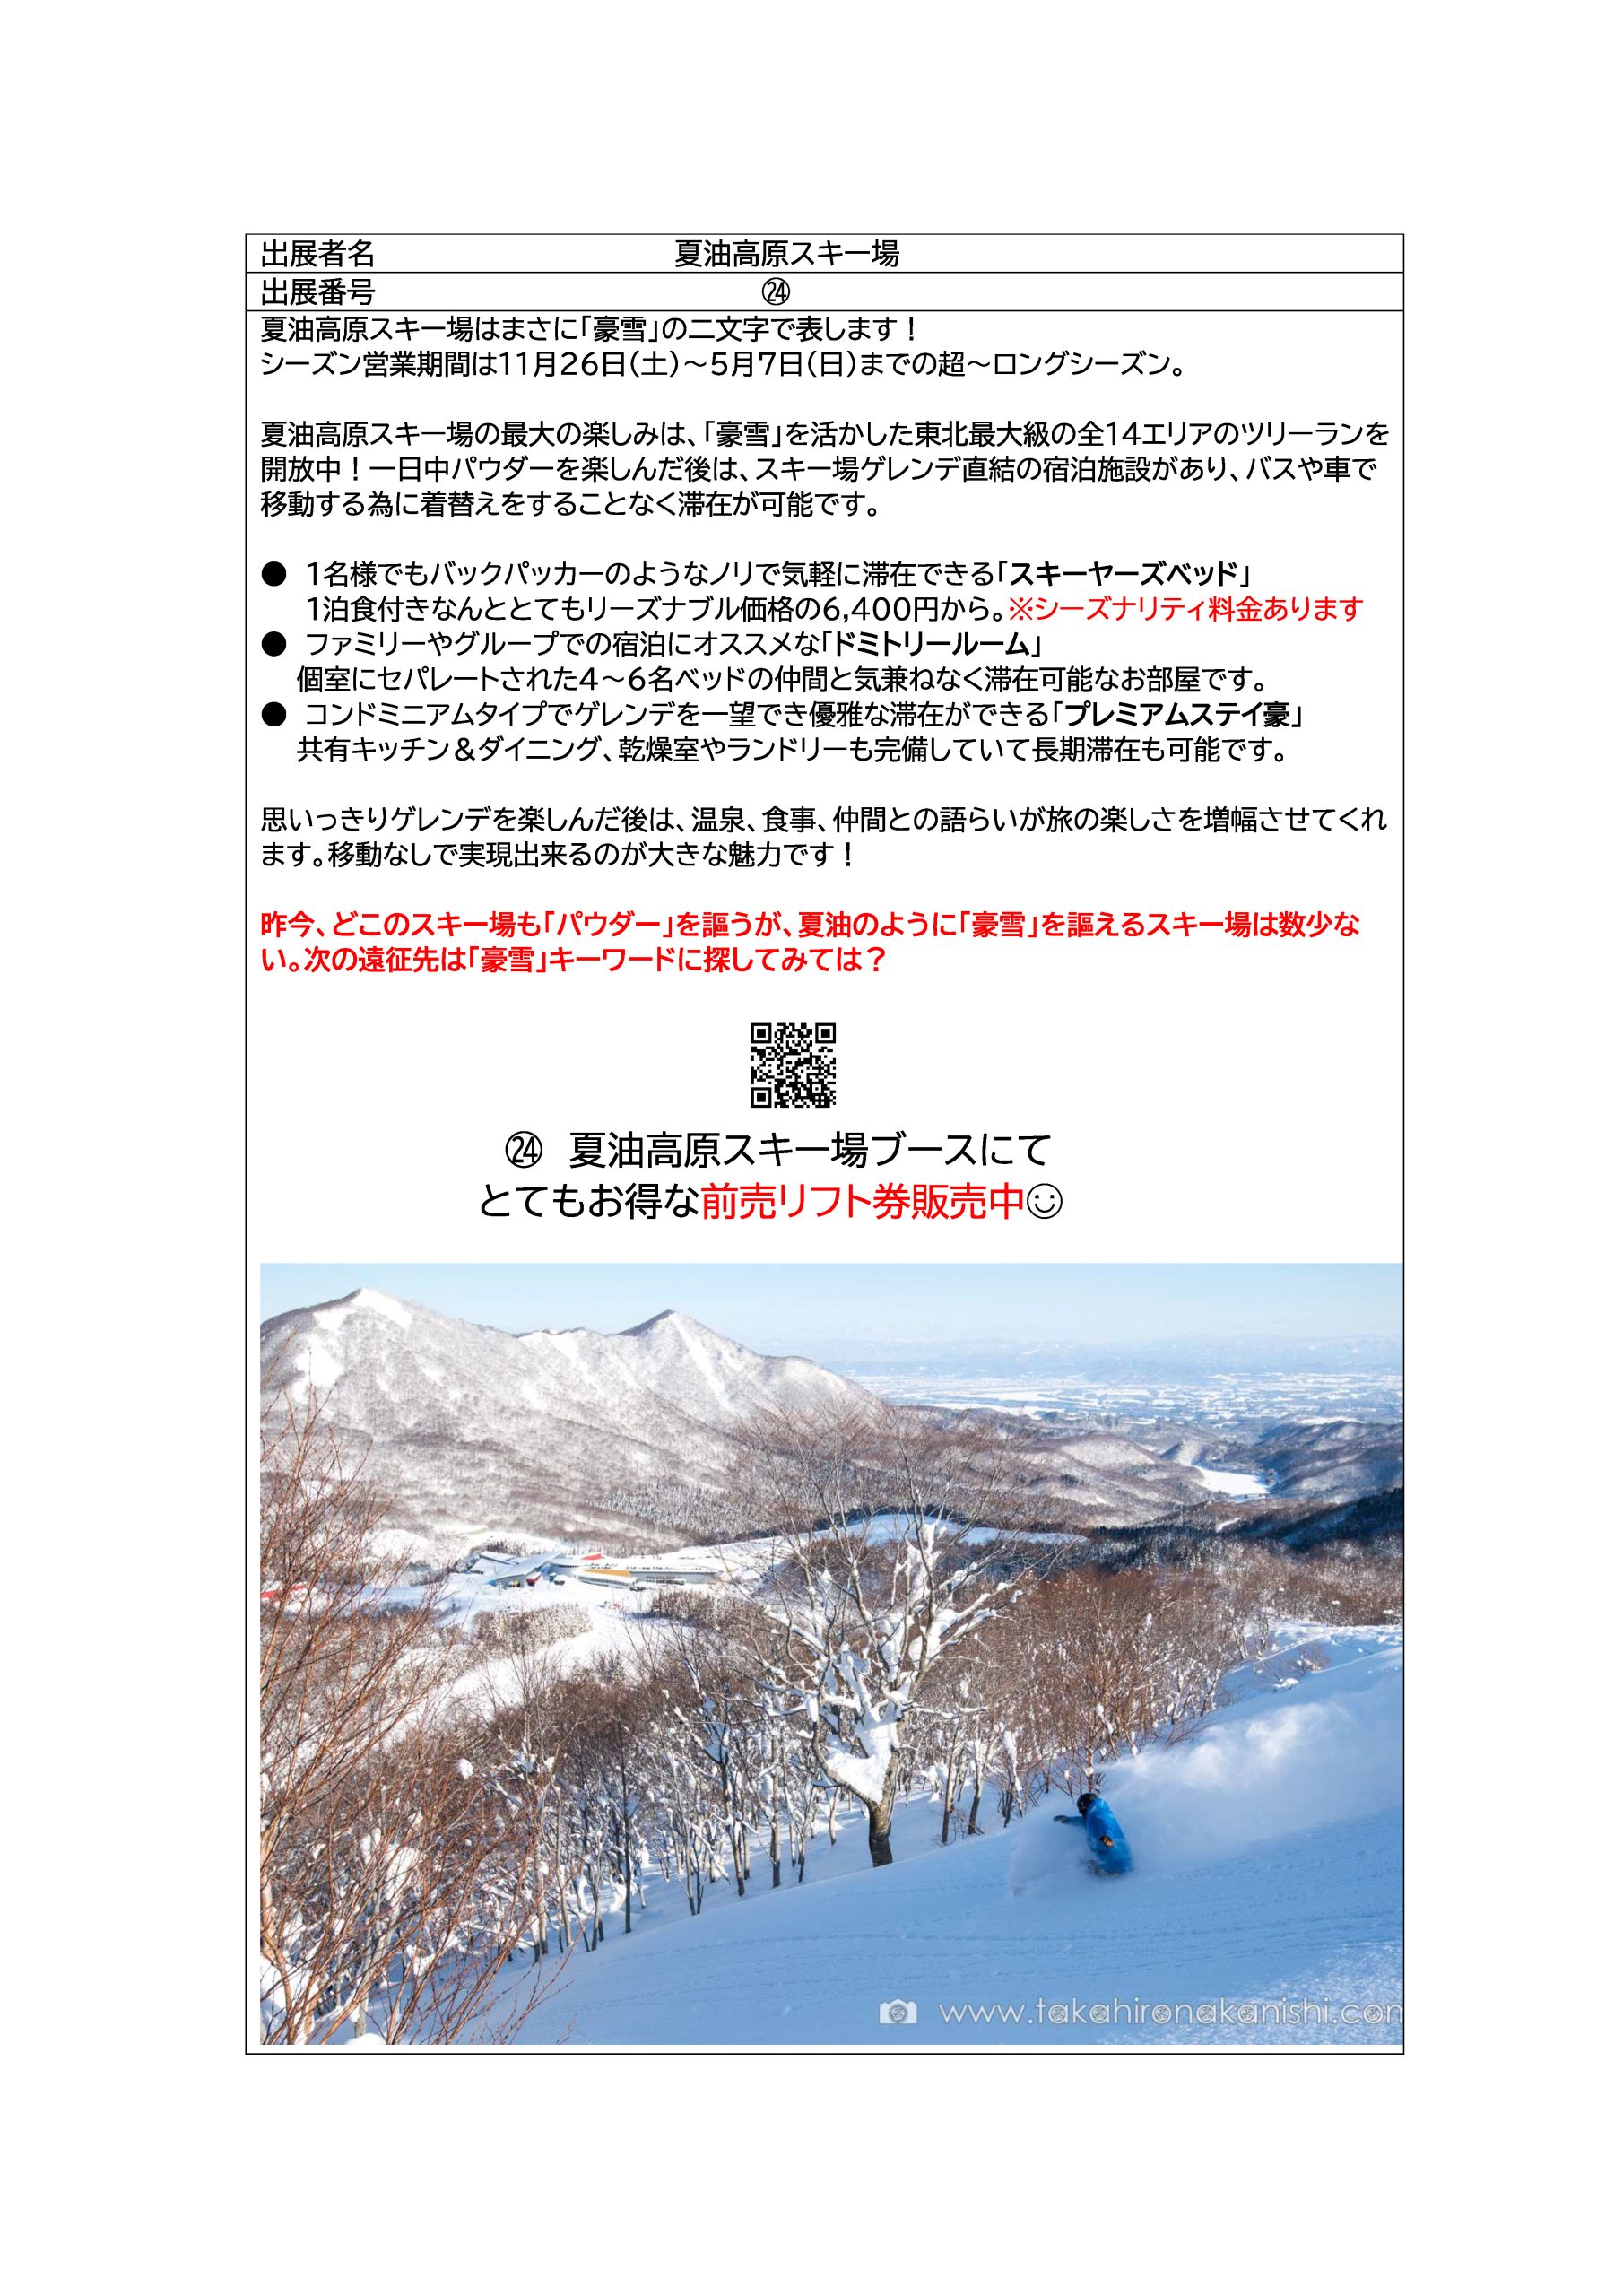 24]夏油高原スキー場 | 神田スポーツ祭り2022